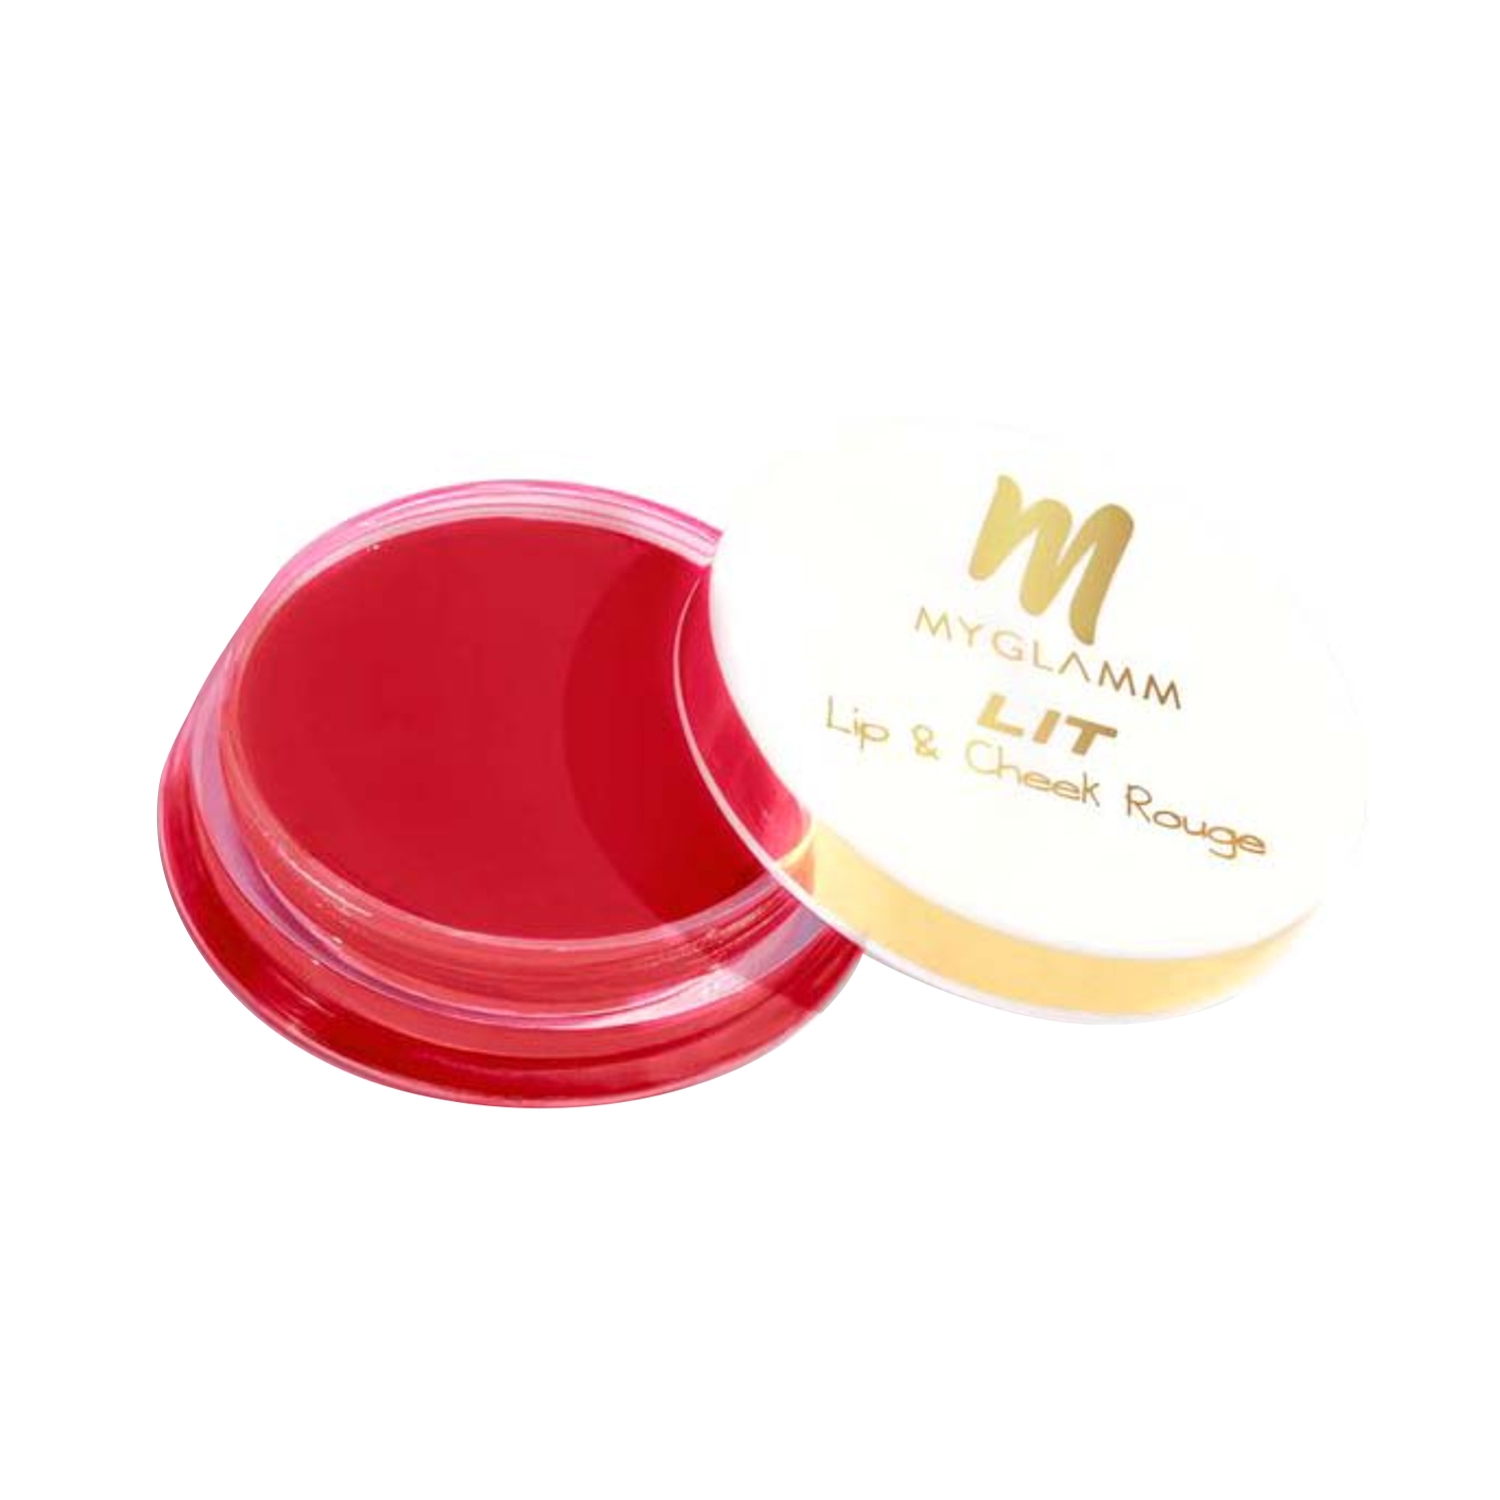 MyGlamm | MyGlamm Lip and Cheek Rouge - Strawberry Rush (10g)